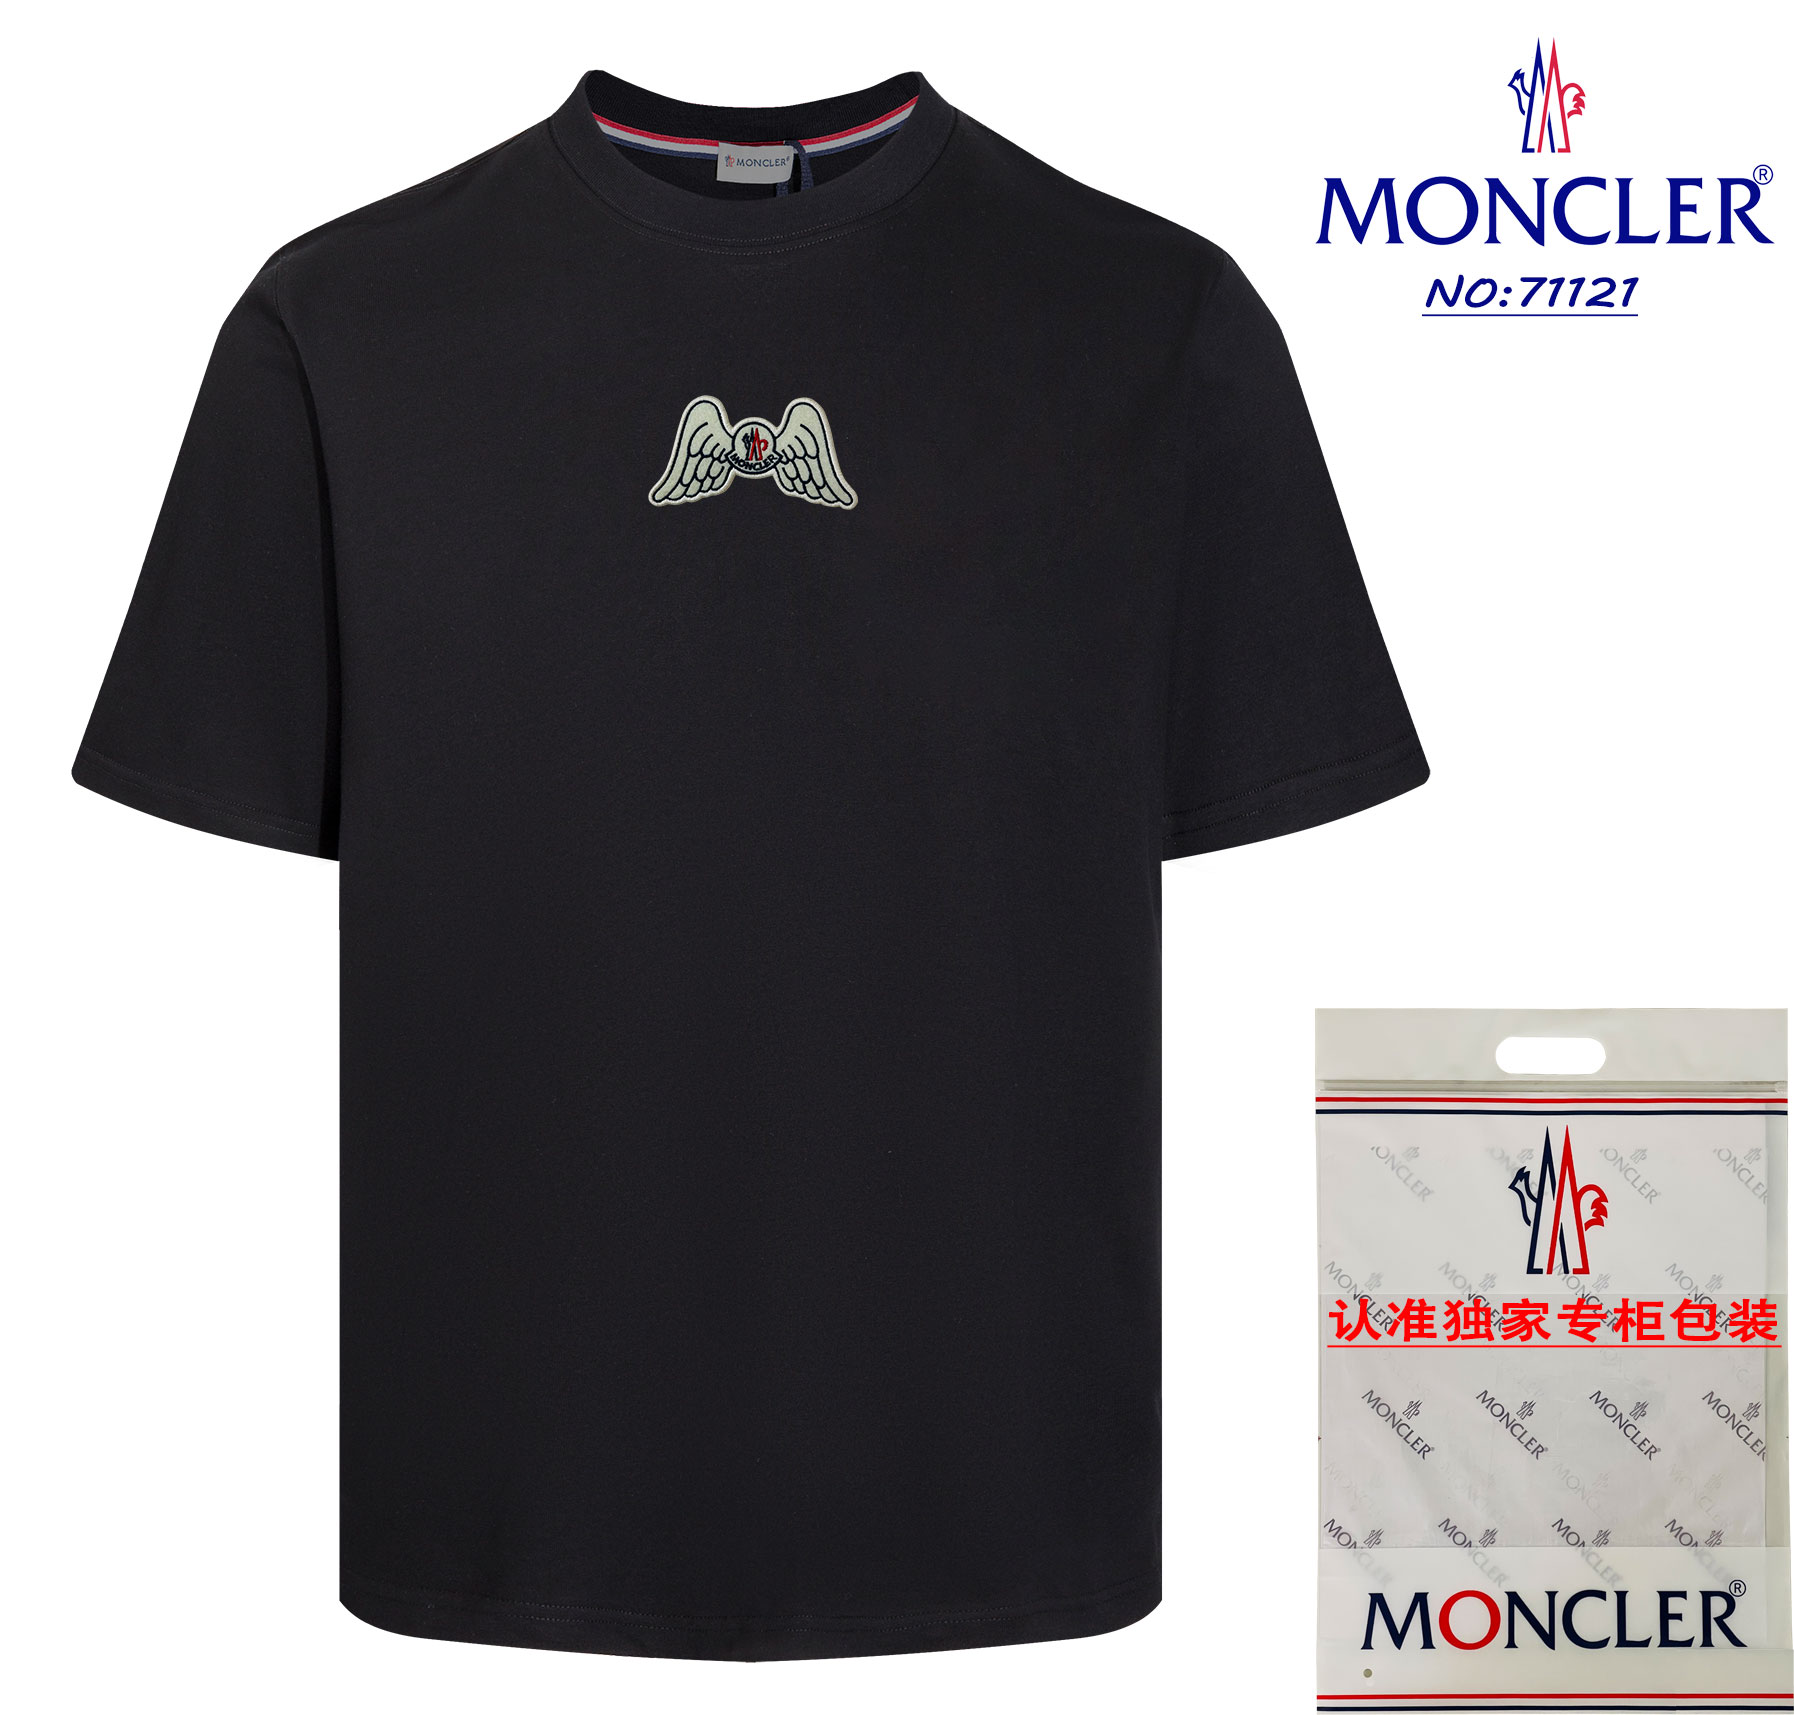 モンクレールMONCLER限定スーパーコピー半袖Tシャツコットンブラック柔らかい高級_1